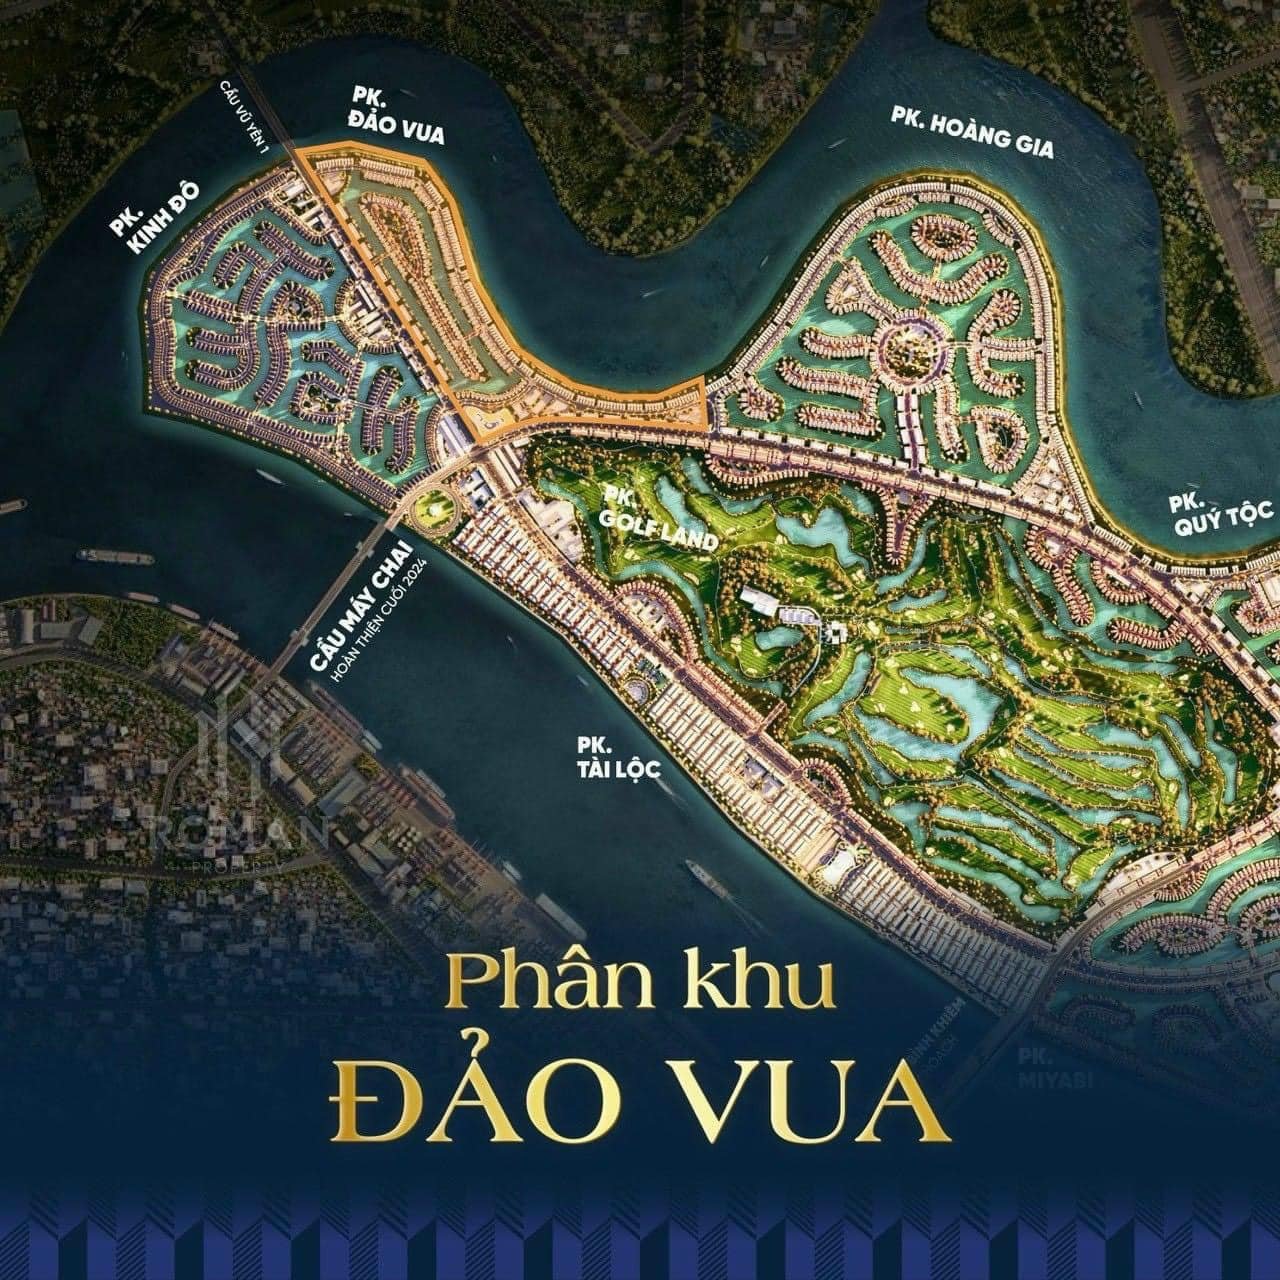 Phân khu Đảo Vua - Vinhomes Royal Island Vũ Yên, Hải Phòng